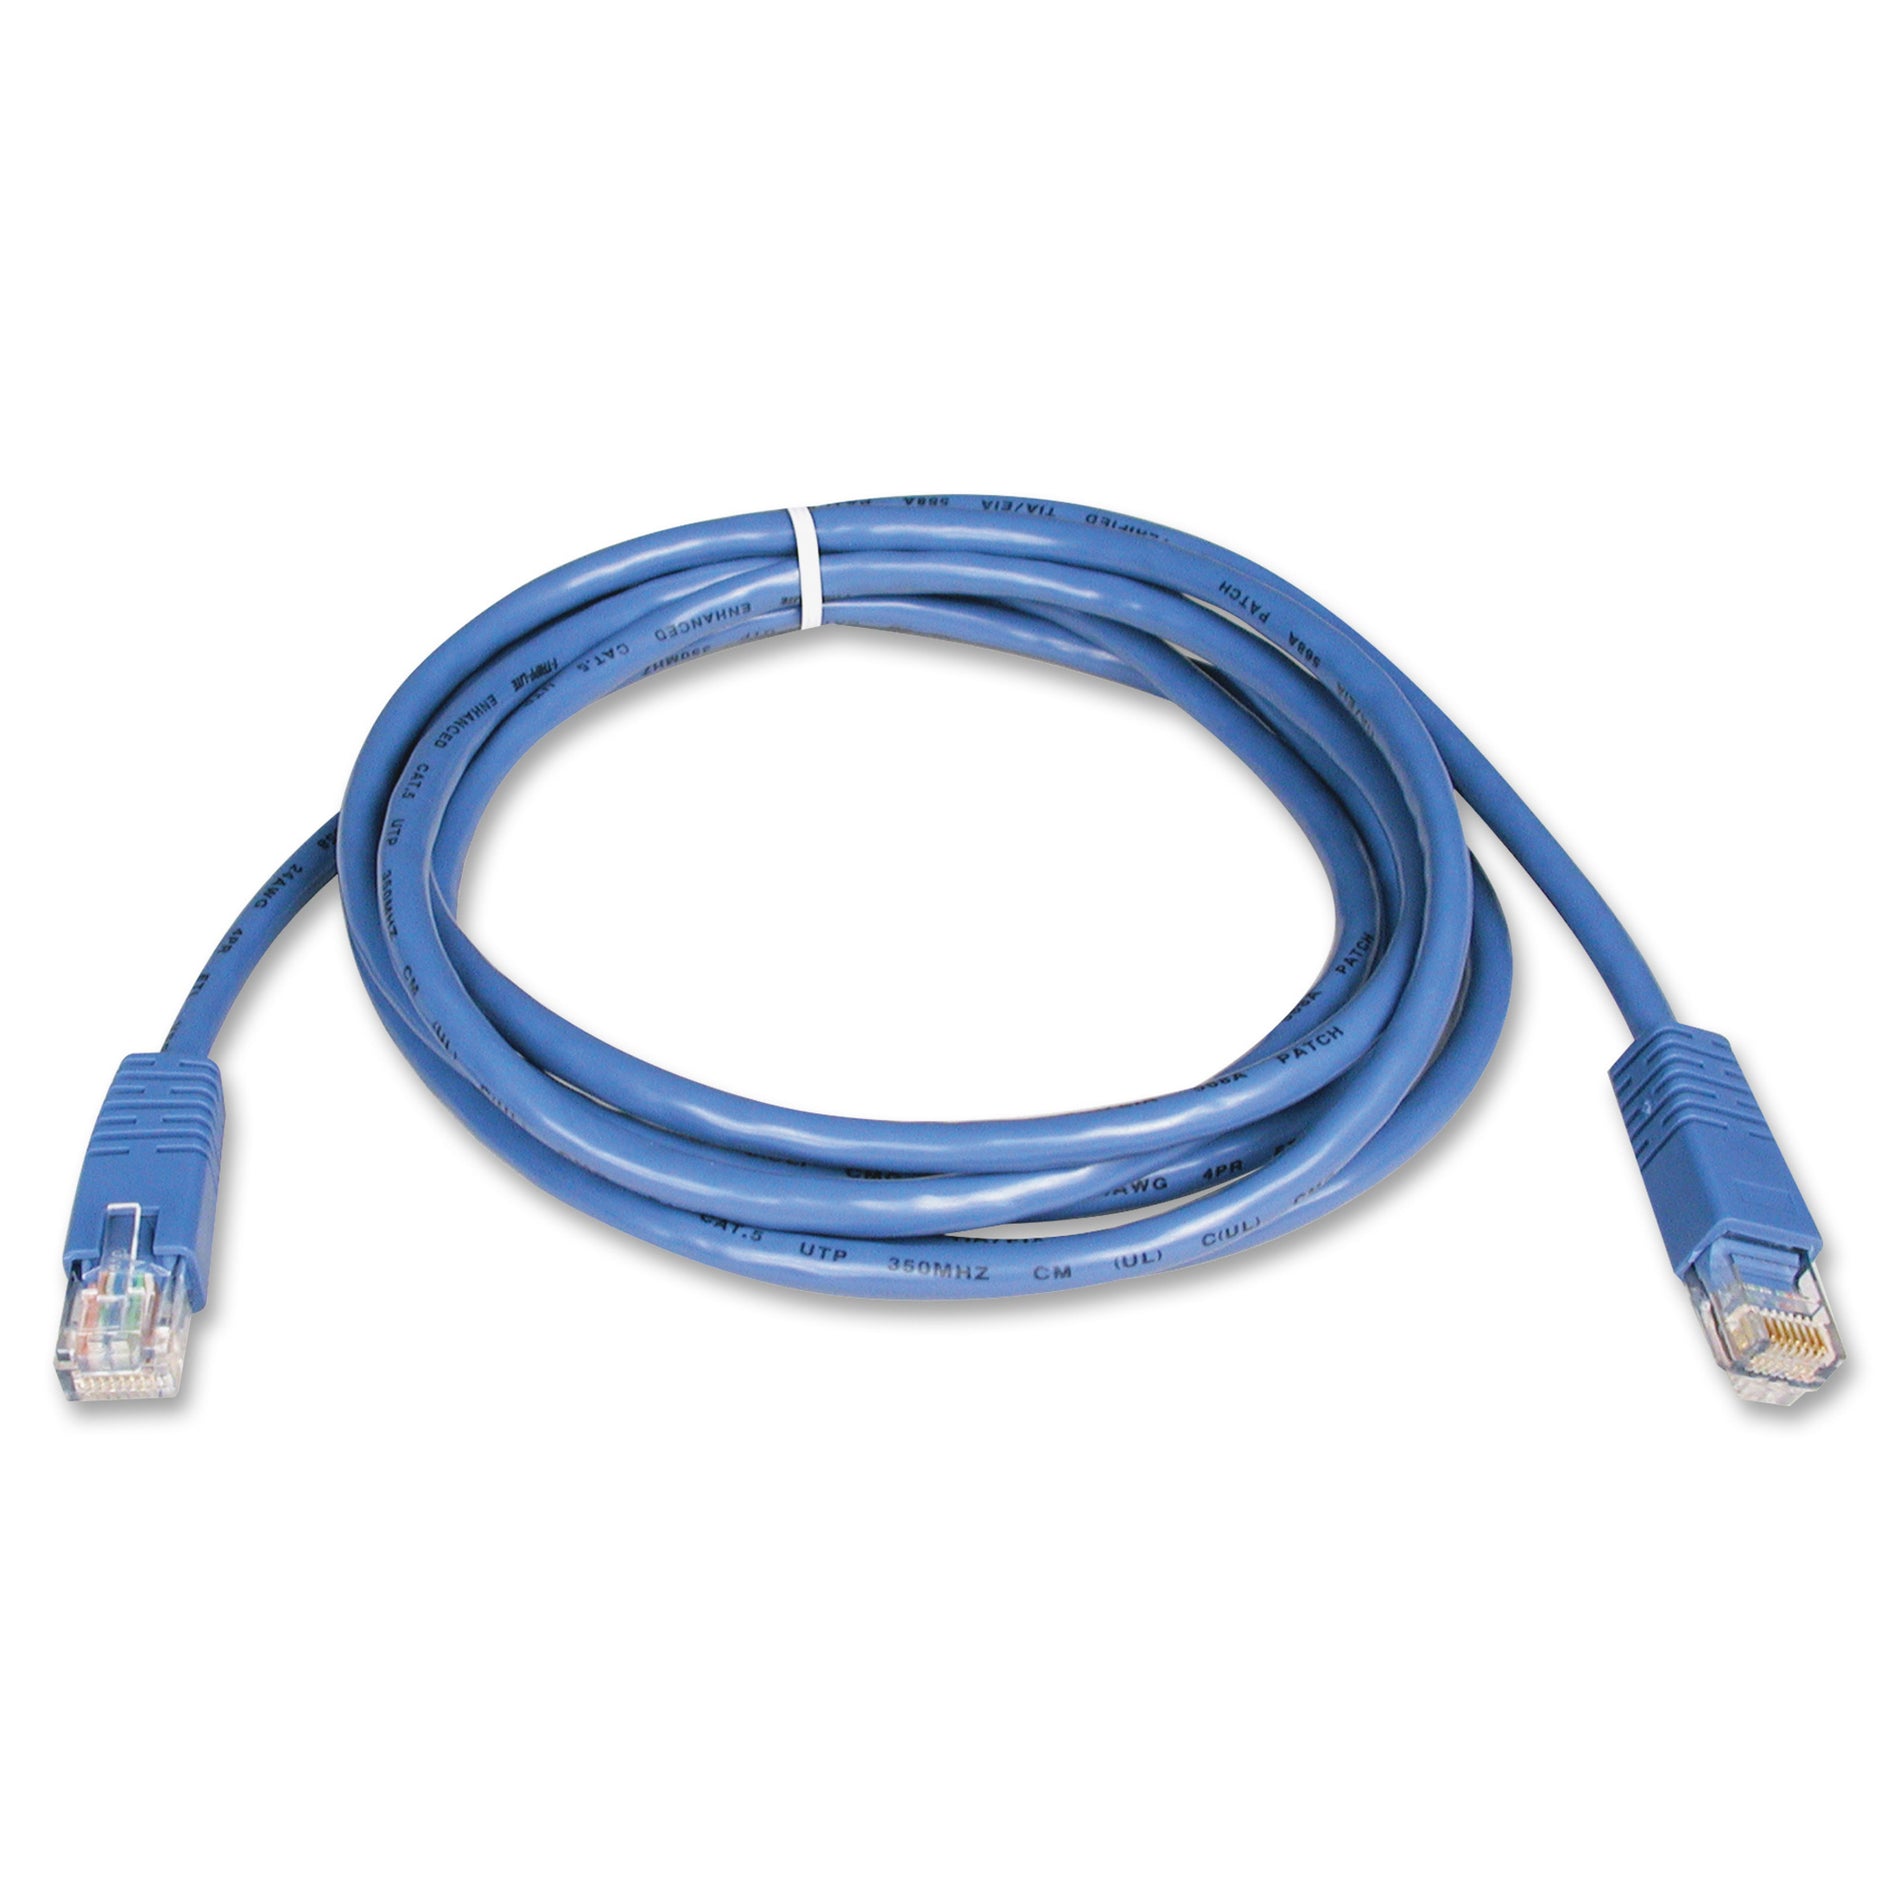 Tripp Lite N002-014-BL Cat5e Molded Patch Cable, 14ft Blue, Lifetime Warranty